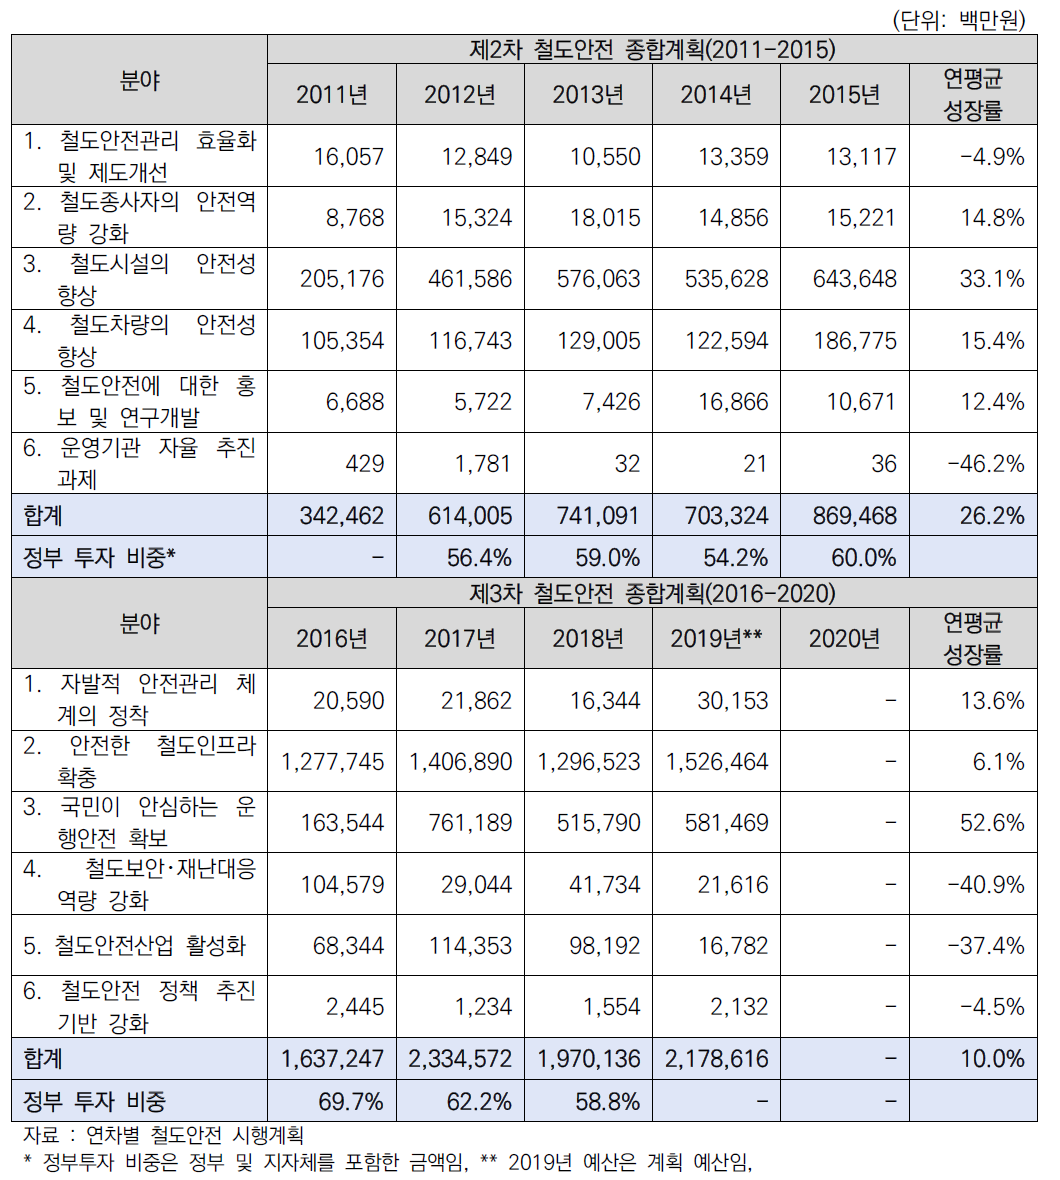 철도안전 시행계획을 통한 연간 집행 결과(2011년~2019년)